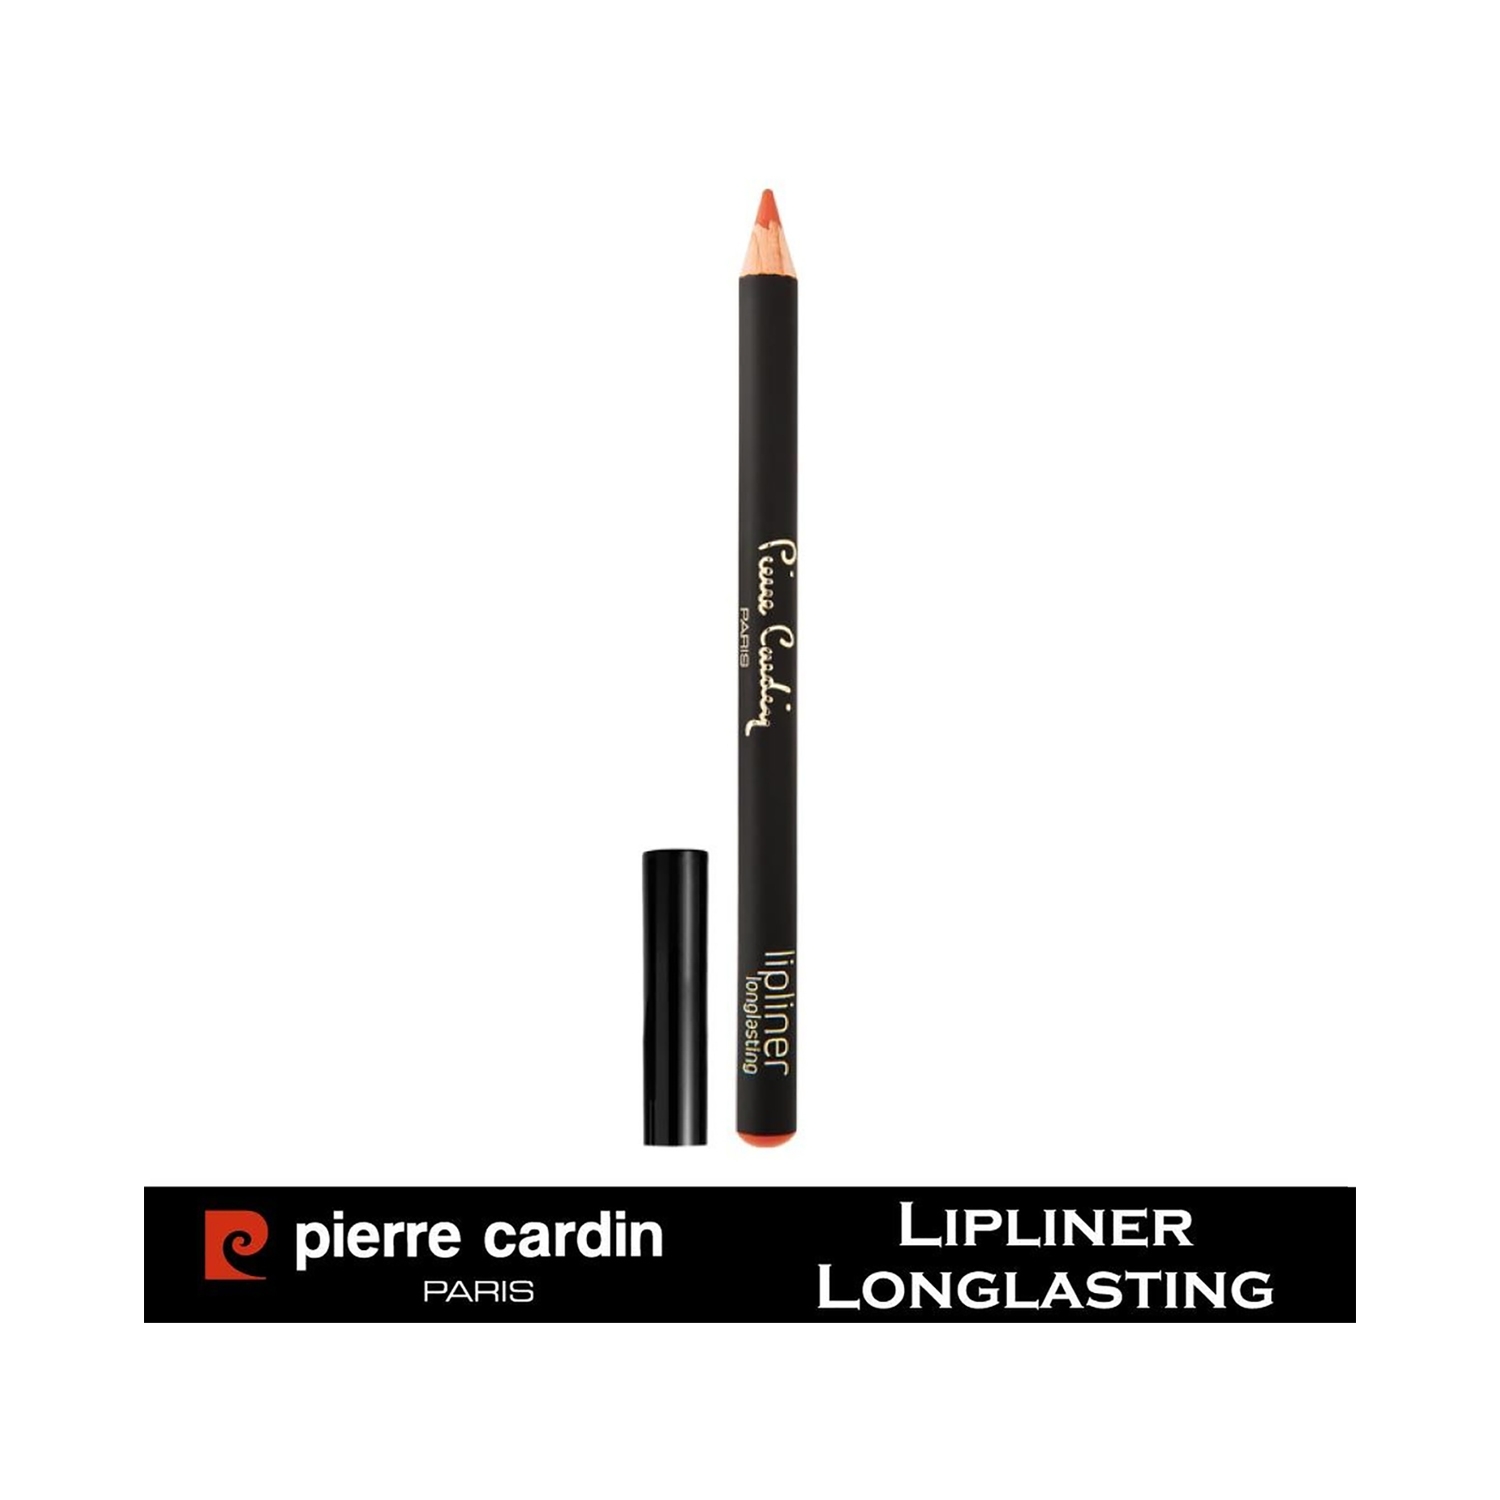 Pierre Cardin Paris | Pierre Cardin Paris Longlasting Lip Liner Pencil - 410 Sunset (0.4g)